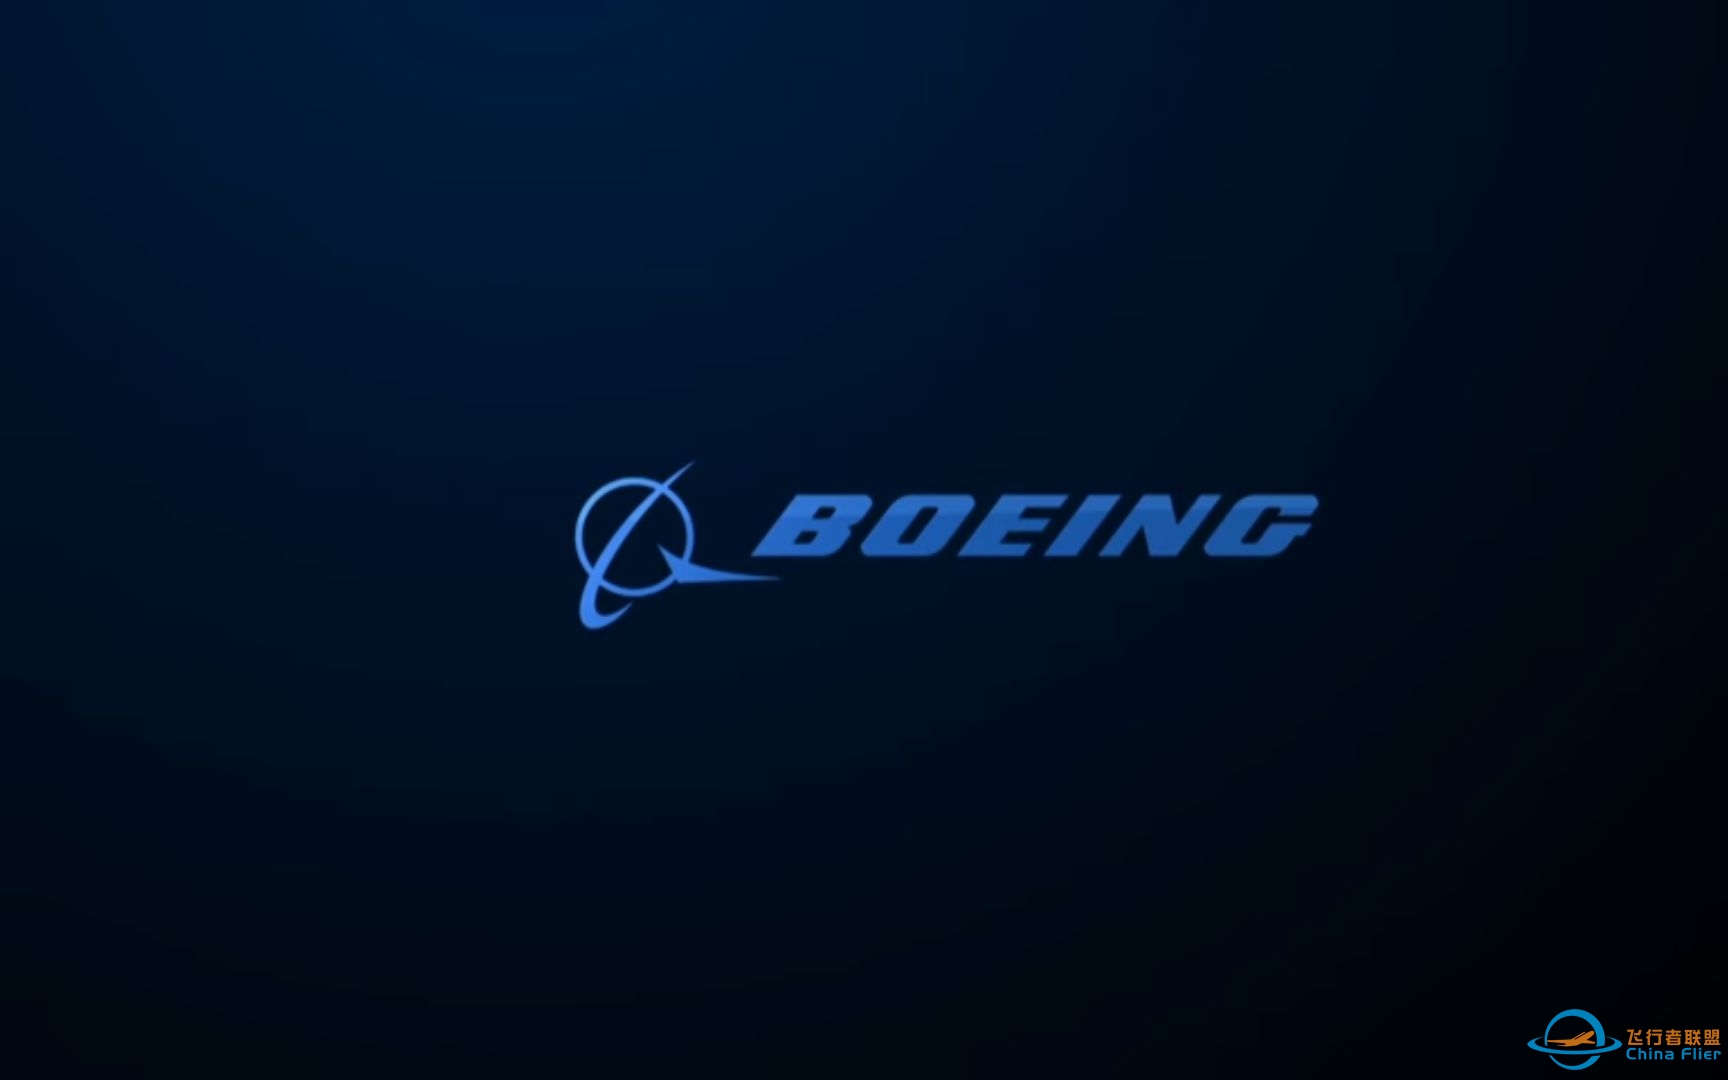 【搬运1080p】波音宣传片:波音全球一百年 Boeing Global Centennial-4119 